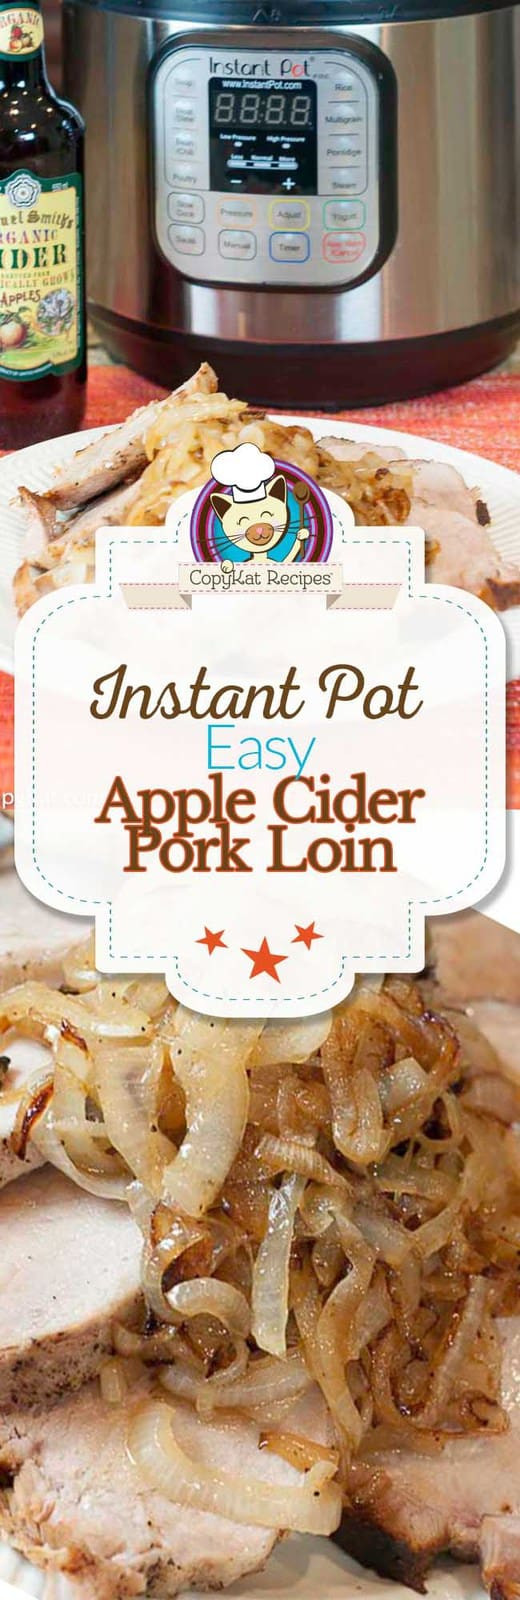 Pork Loin Instant Pot Time
 Instant Pot Apple Cider Pork Loin